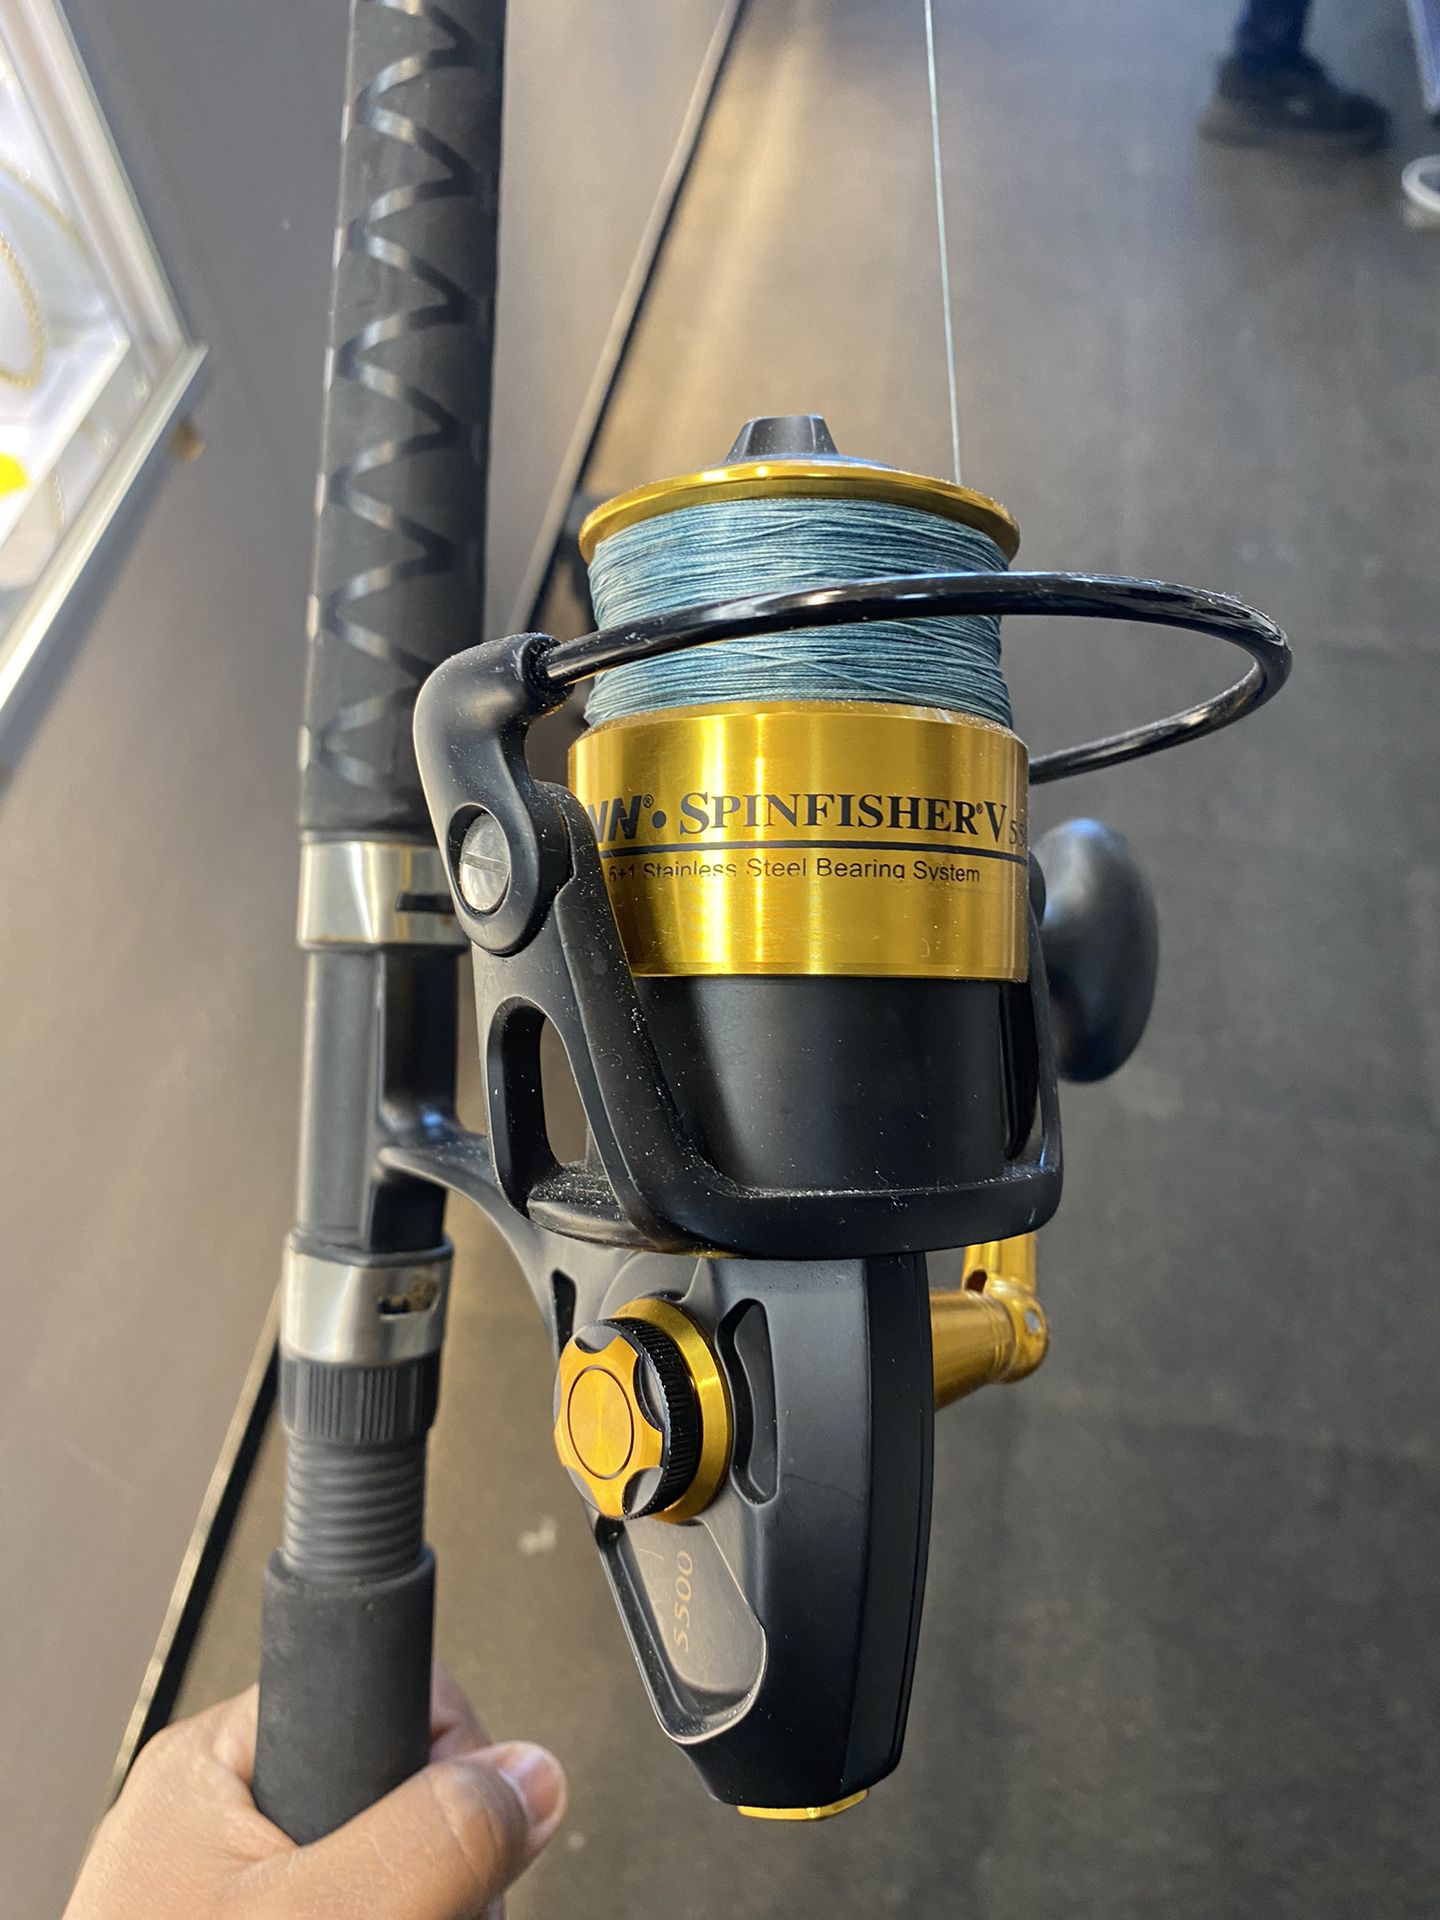 Penn Spinfisher V 5500 Reel Fishing Combo 